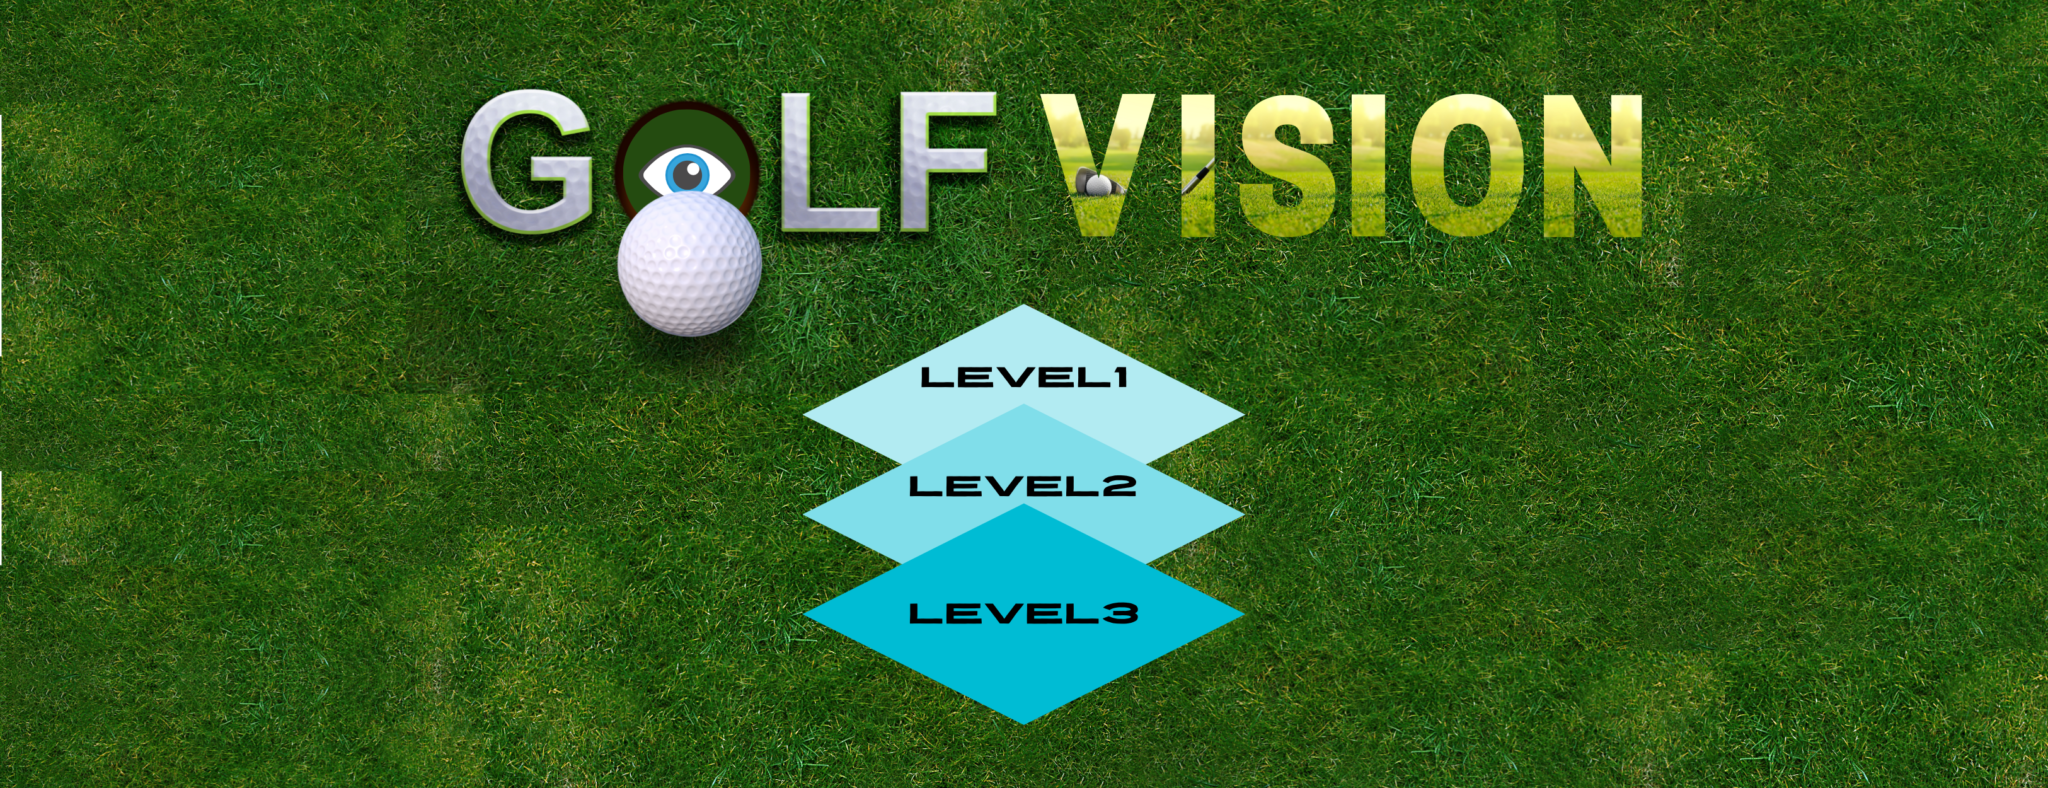 ゴルフスポーツビジョン【Level 2】